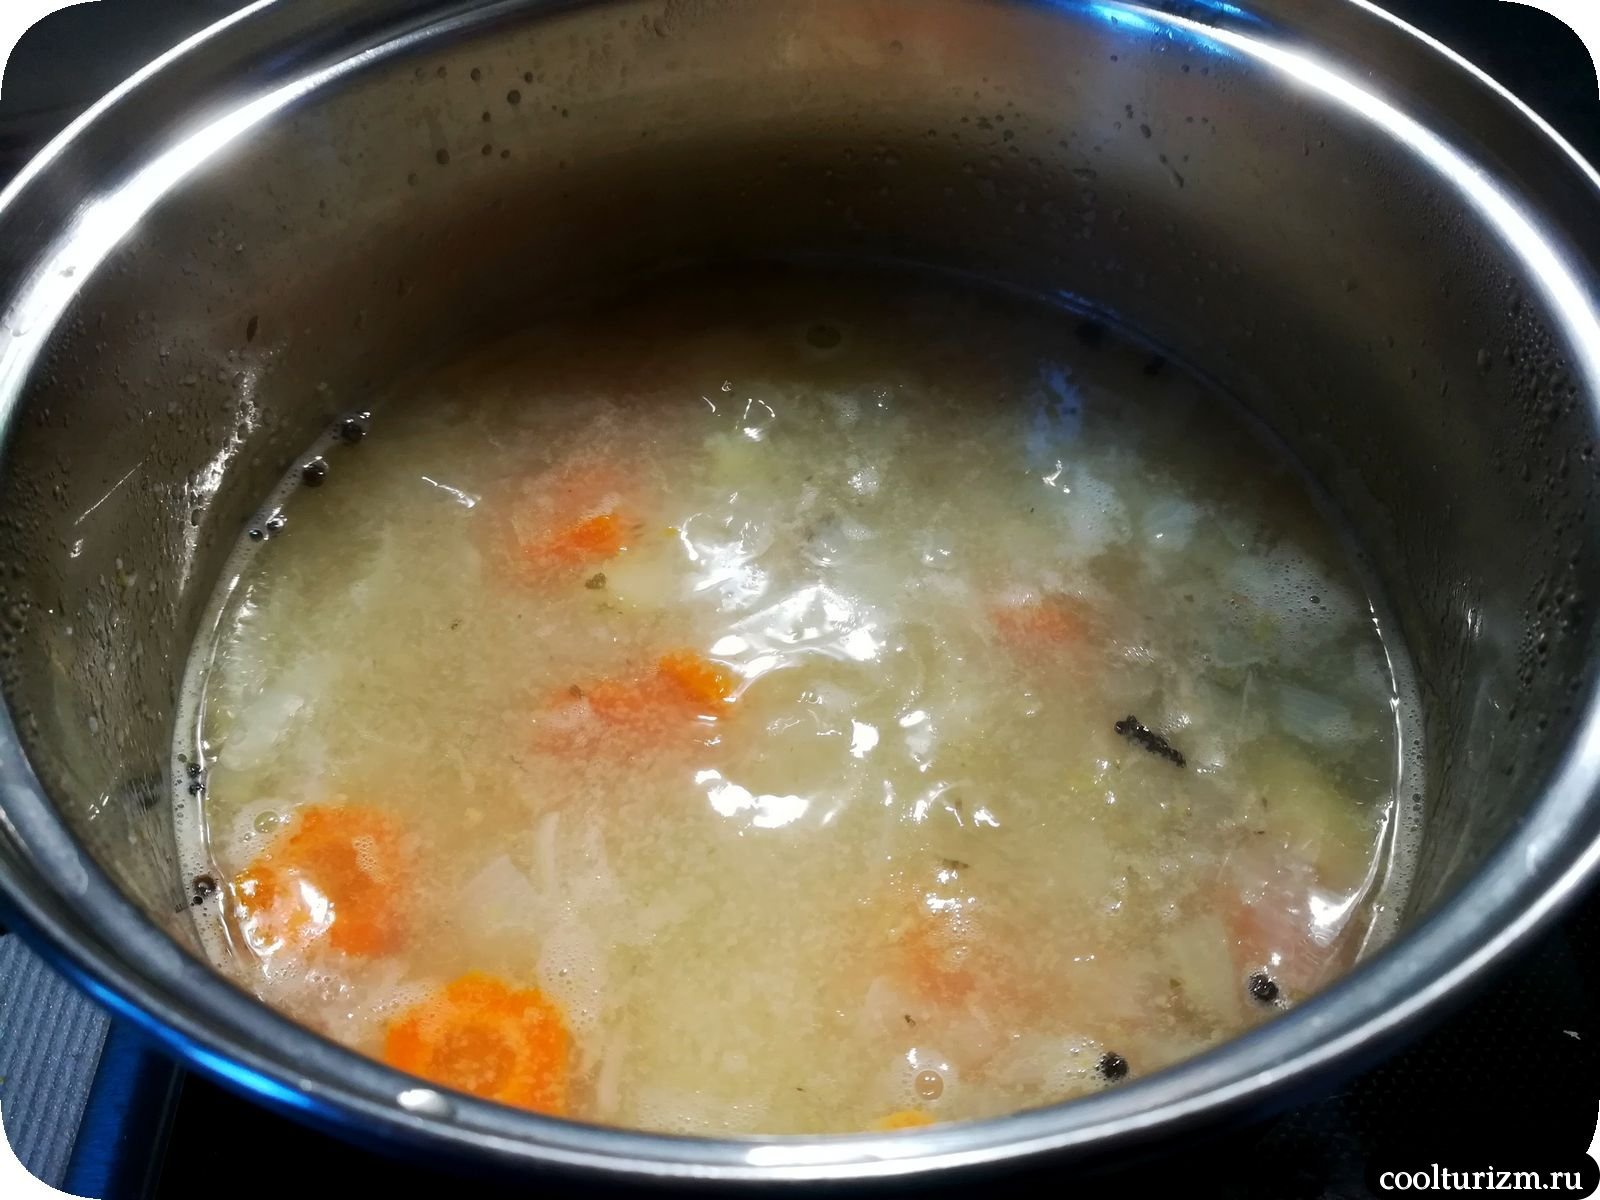 Сварить суп на воде. Варка супа. Вареный суп. Варит суп. Что такое суп кипятим.